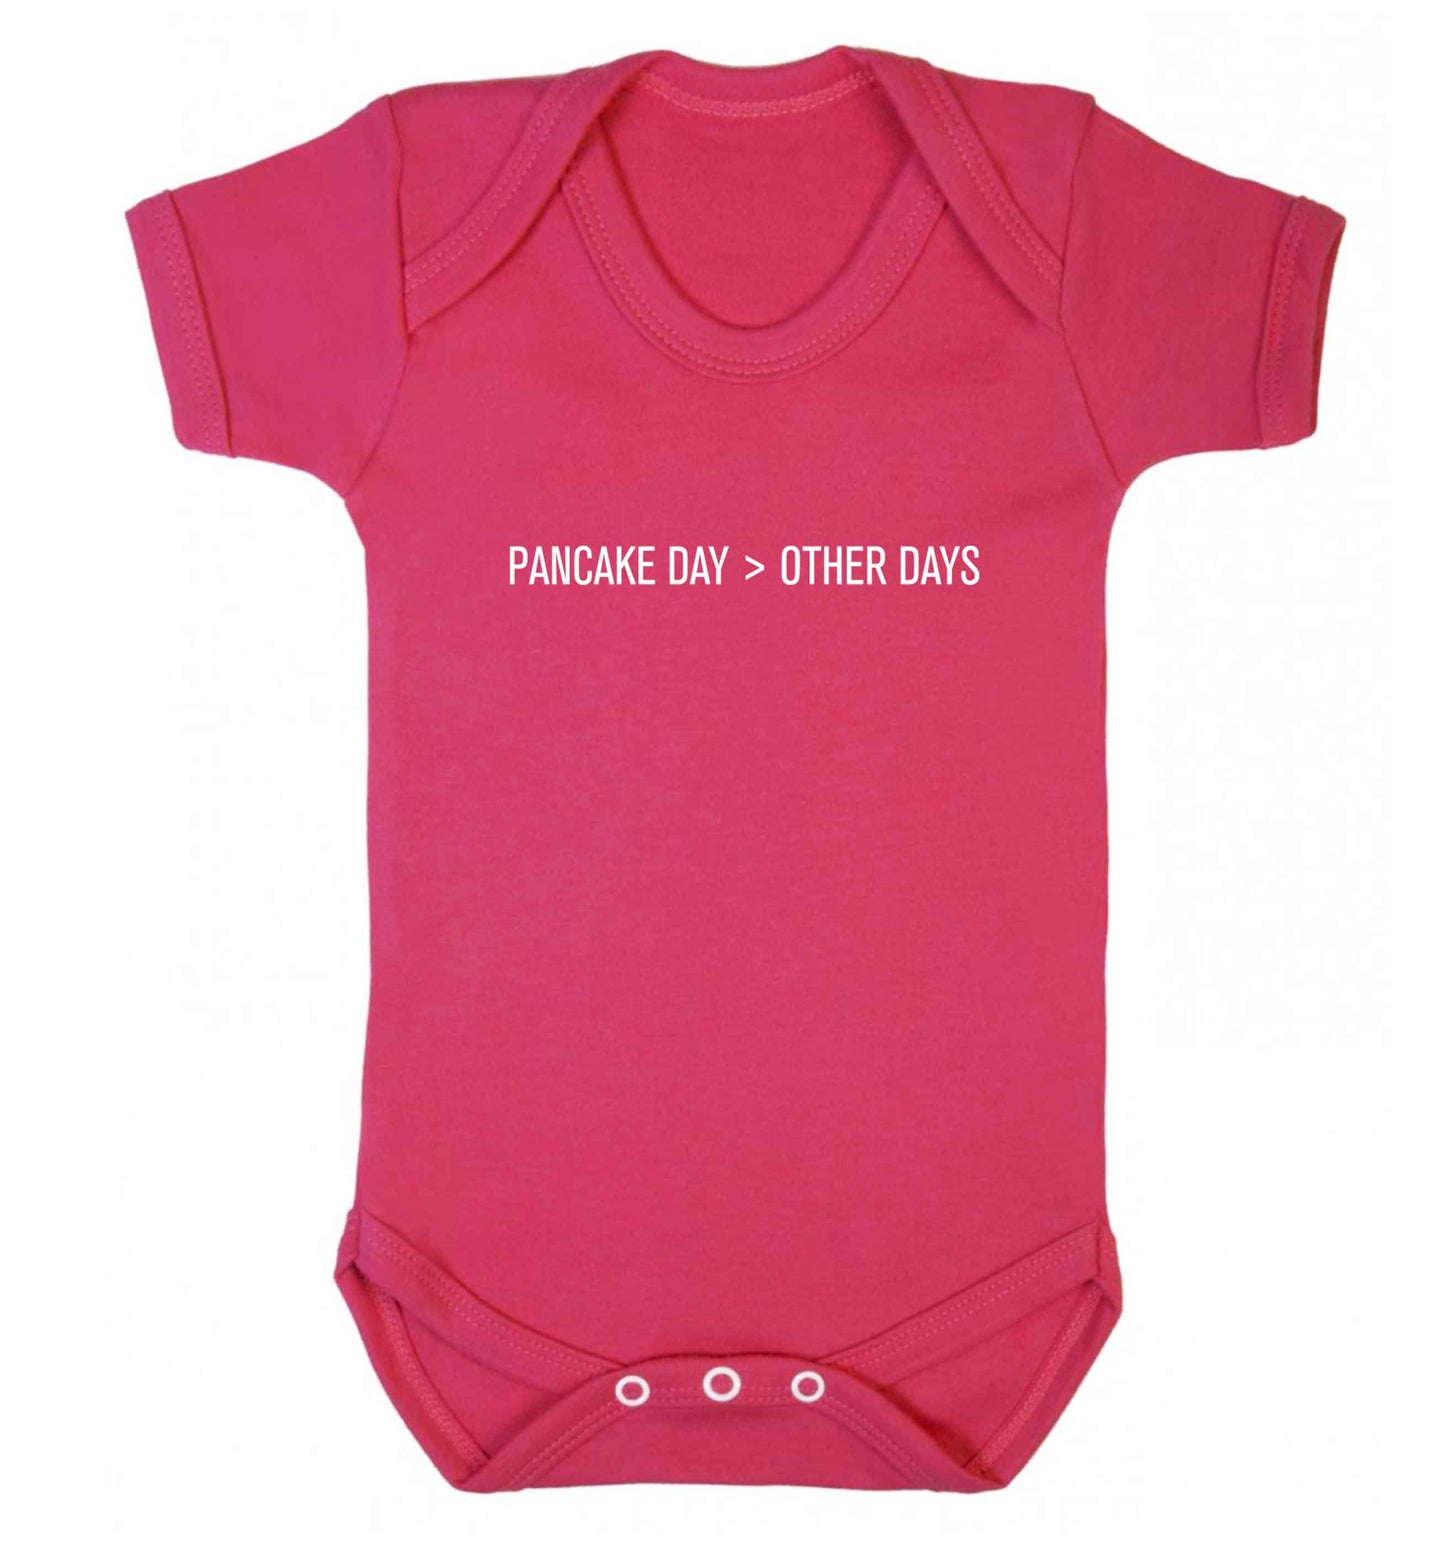 Pancake day > other days baby vest dark pink 18-24 months